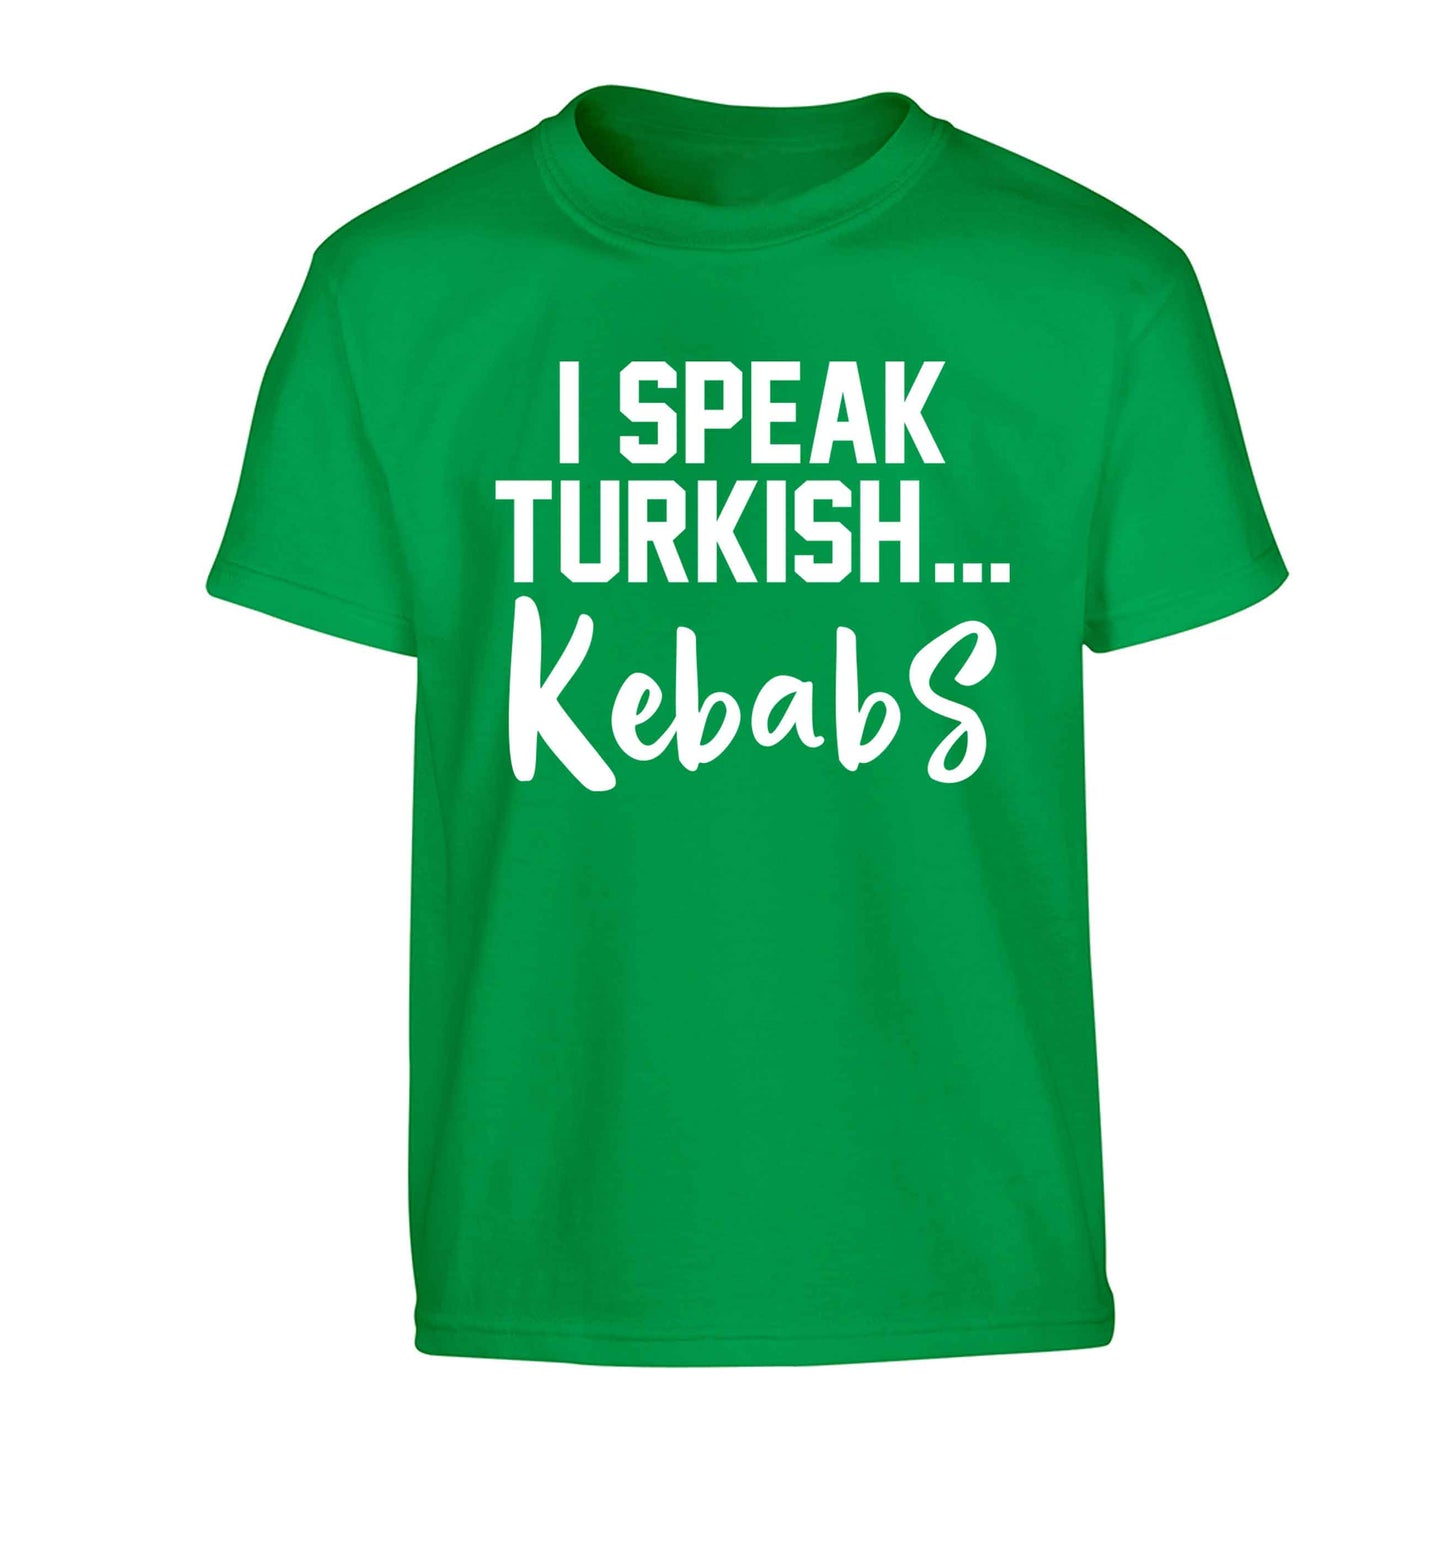 I speak Turkish...kebabs Children's green Tshirt 12-13 Years